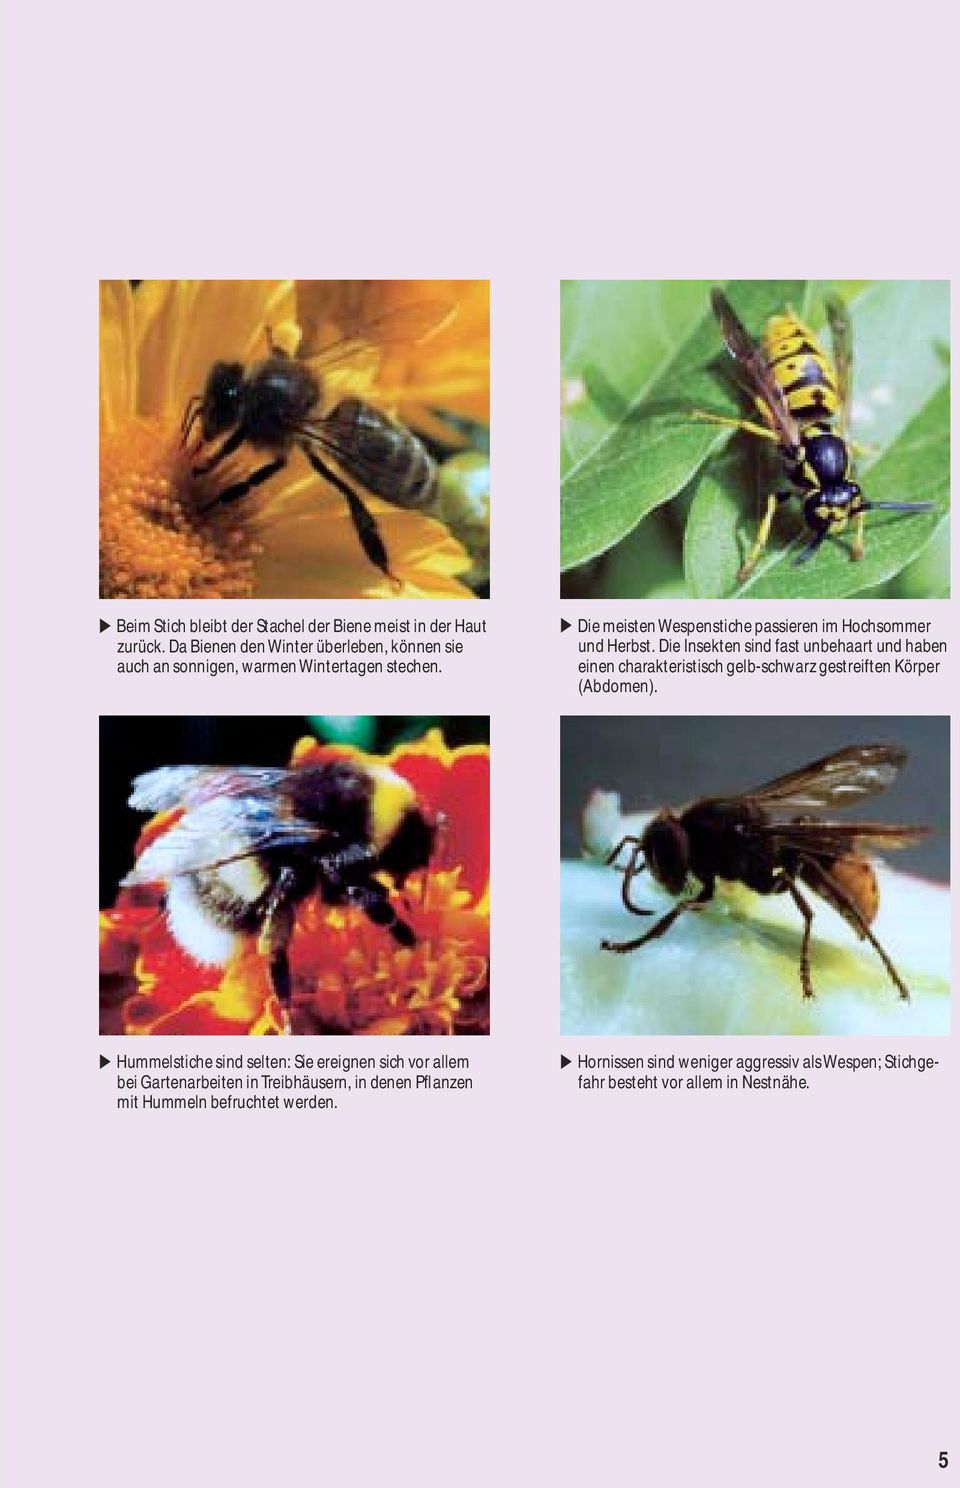 Die meisten Wespenstiche passieren im Hochsommer und Herbst.